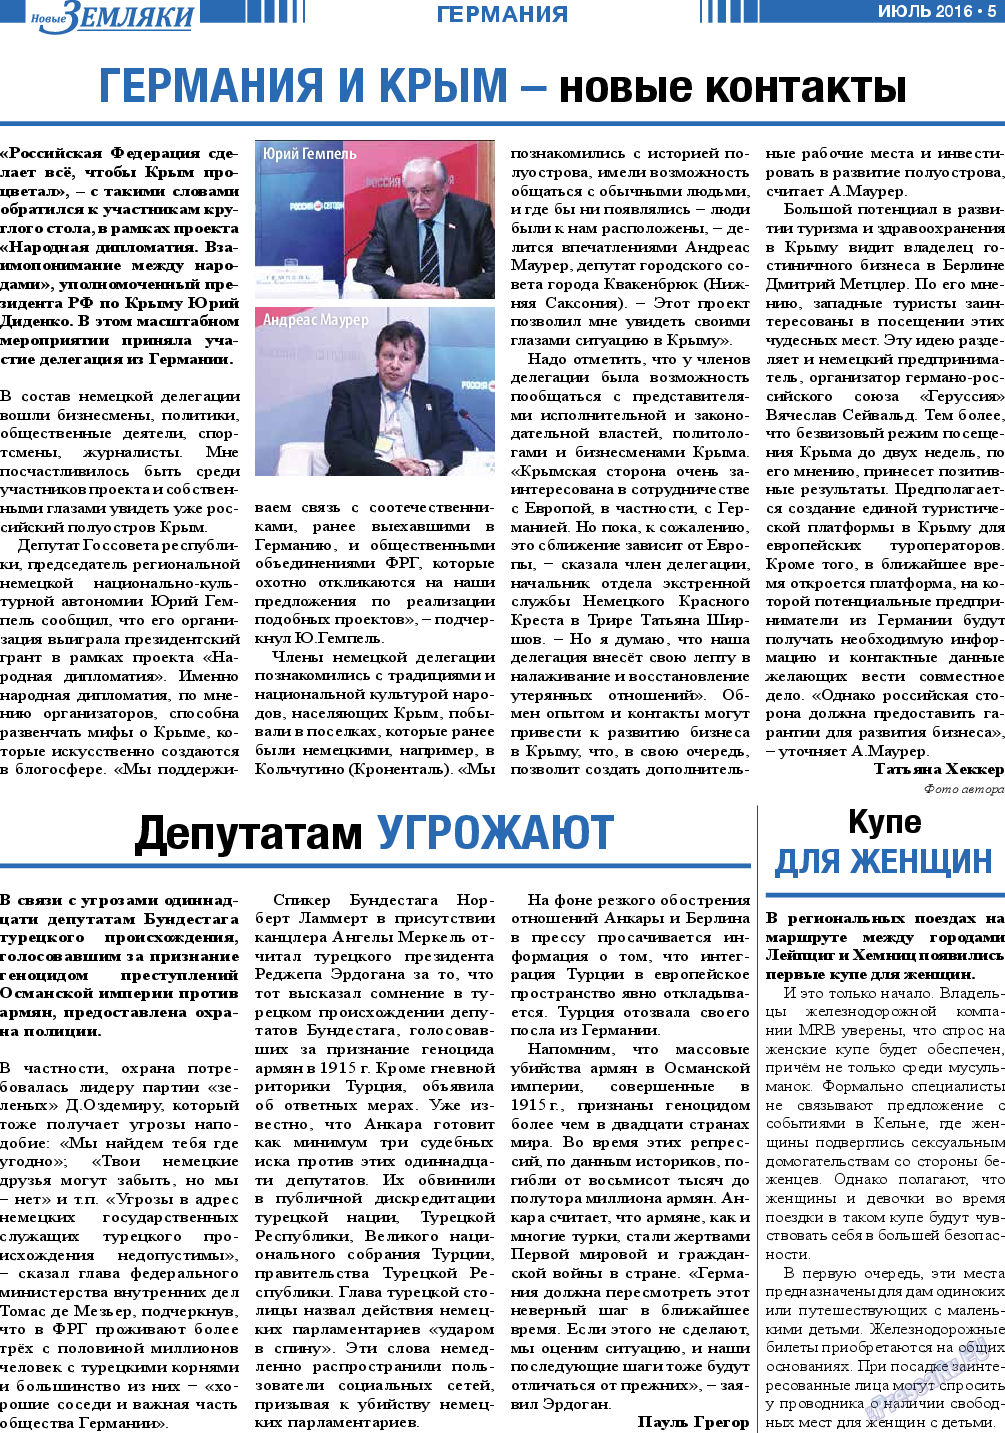 Новые Земляки, газета. 2016 №7 стр.5